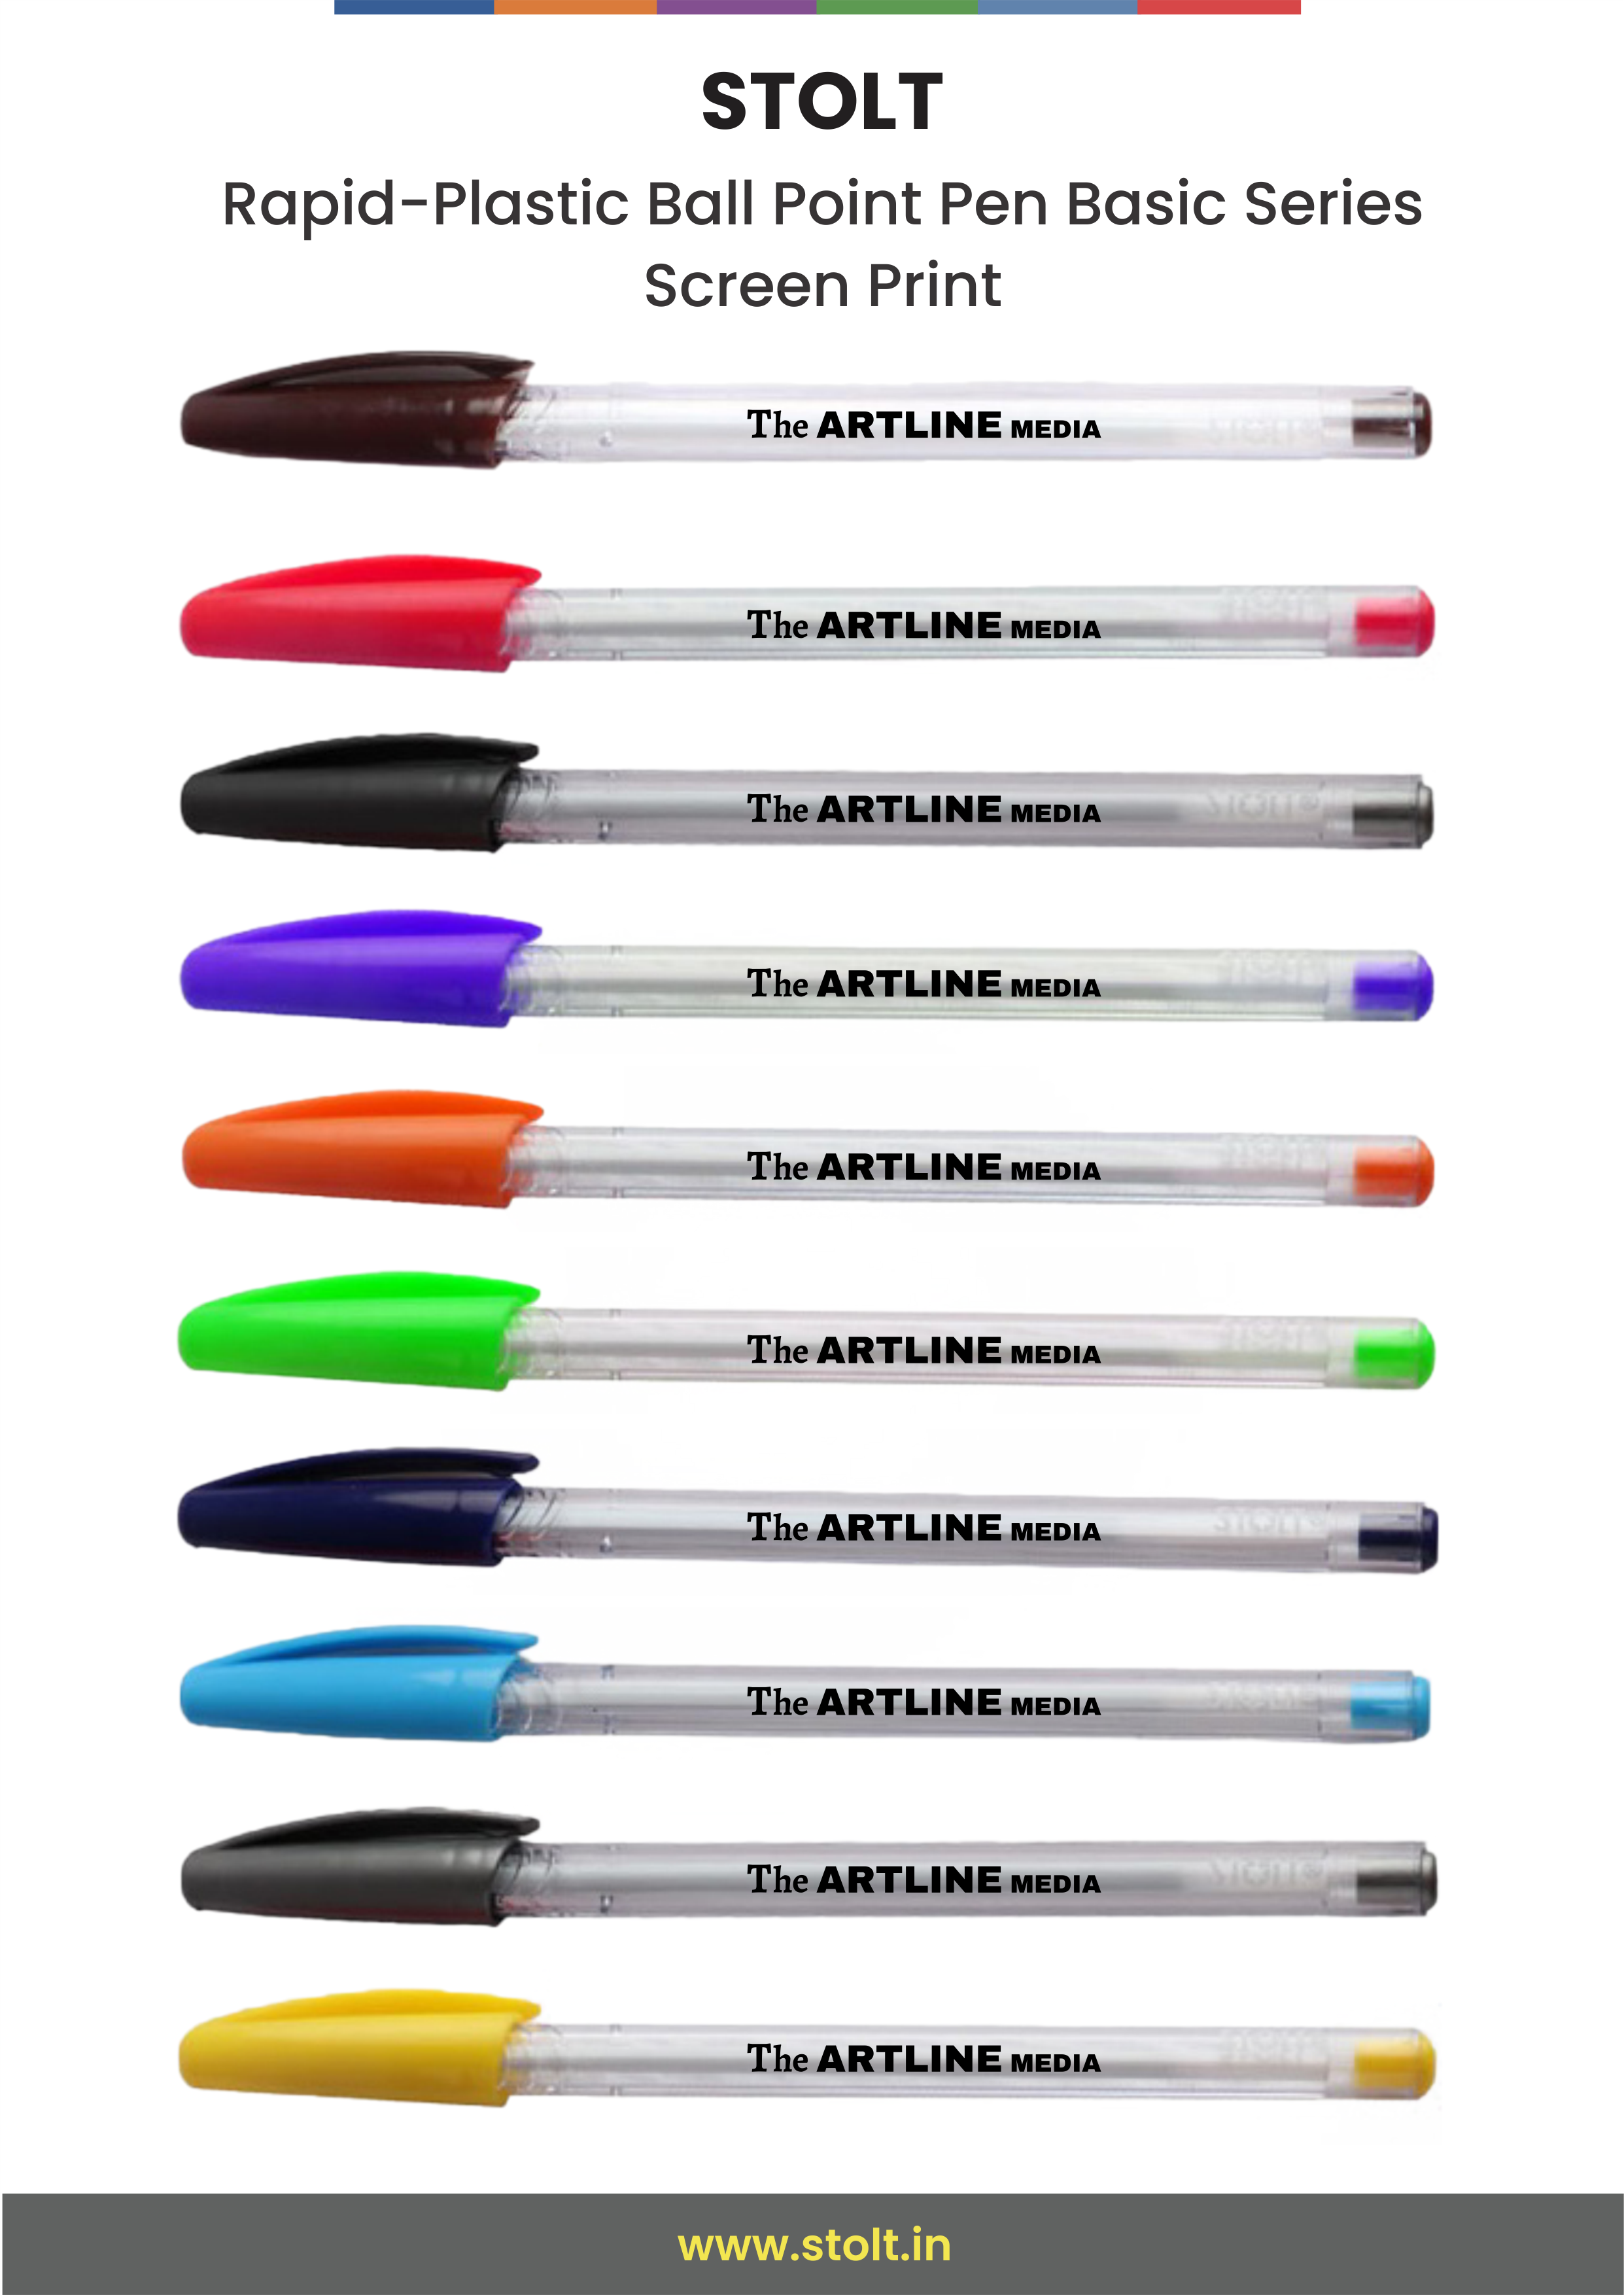 The Art Line Media Pen